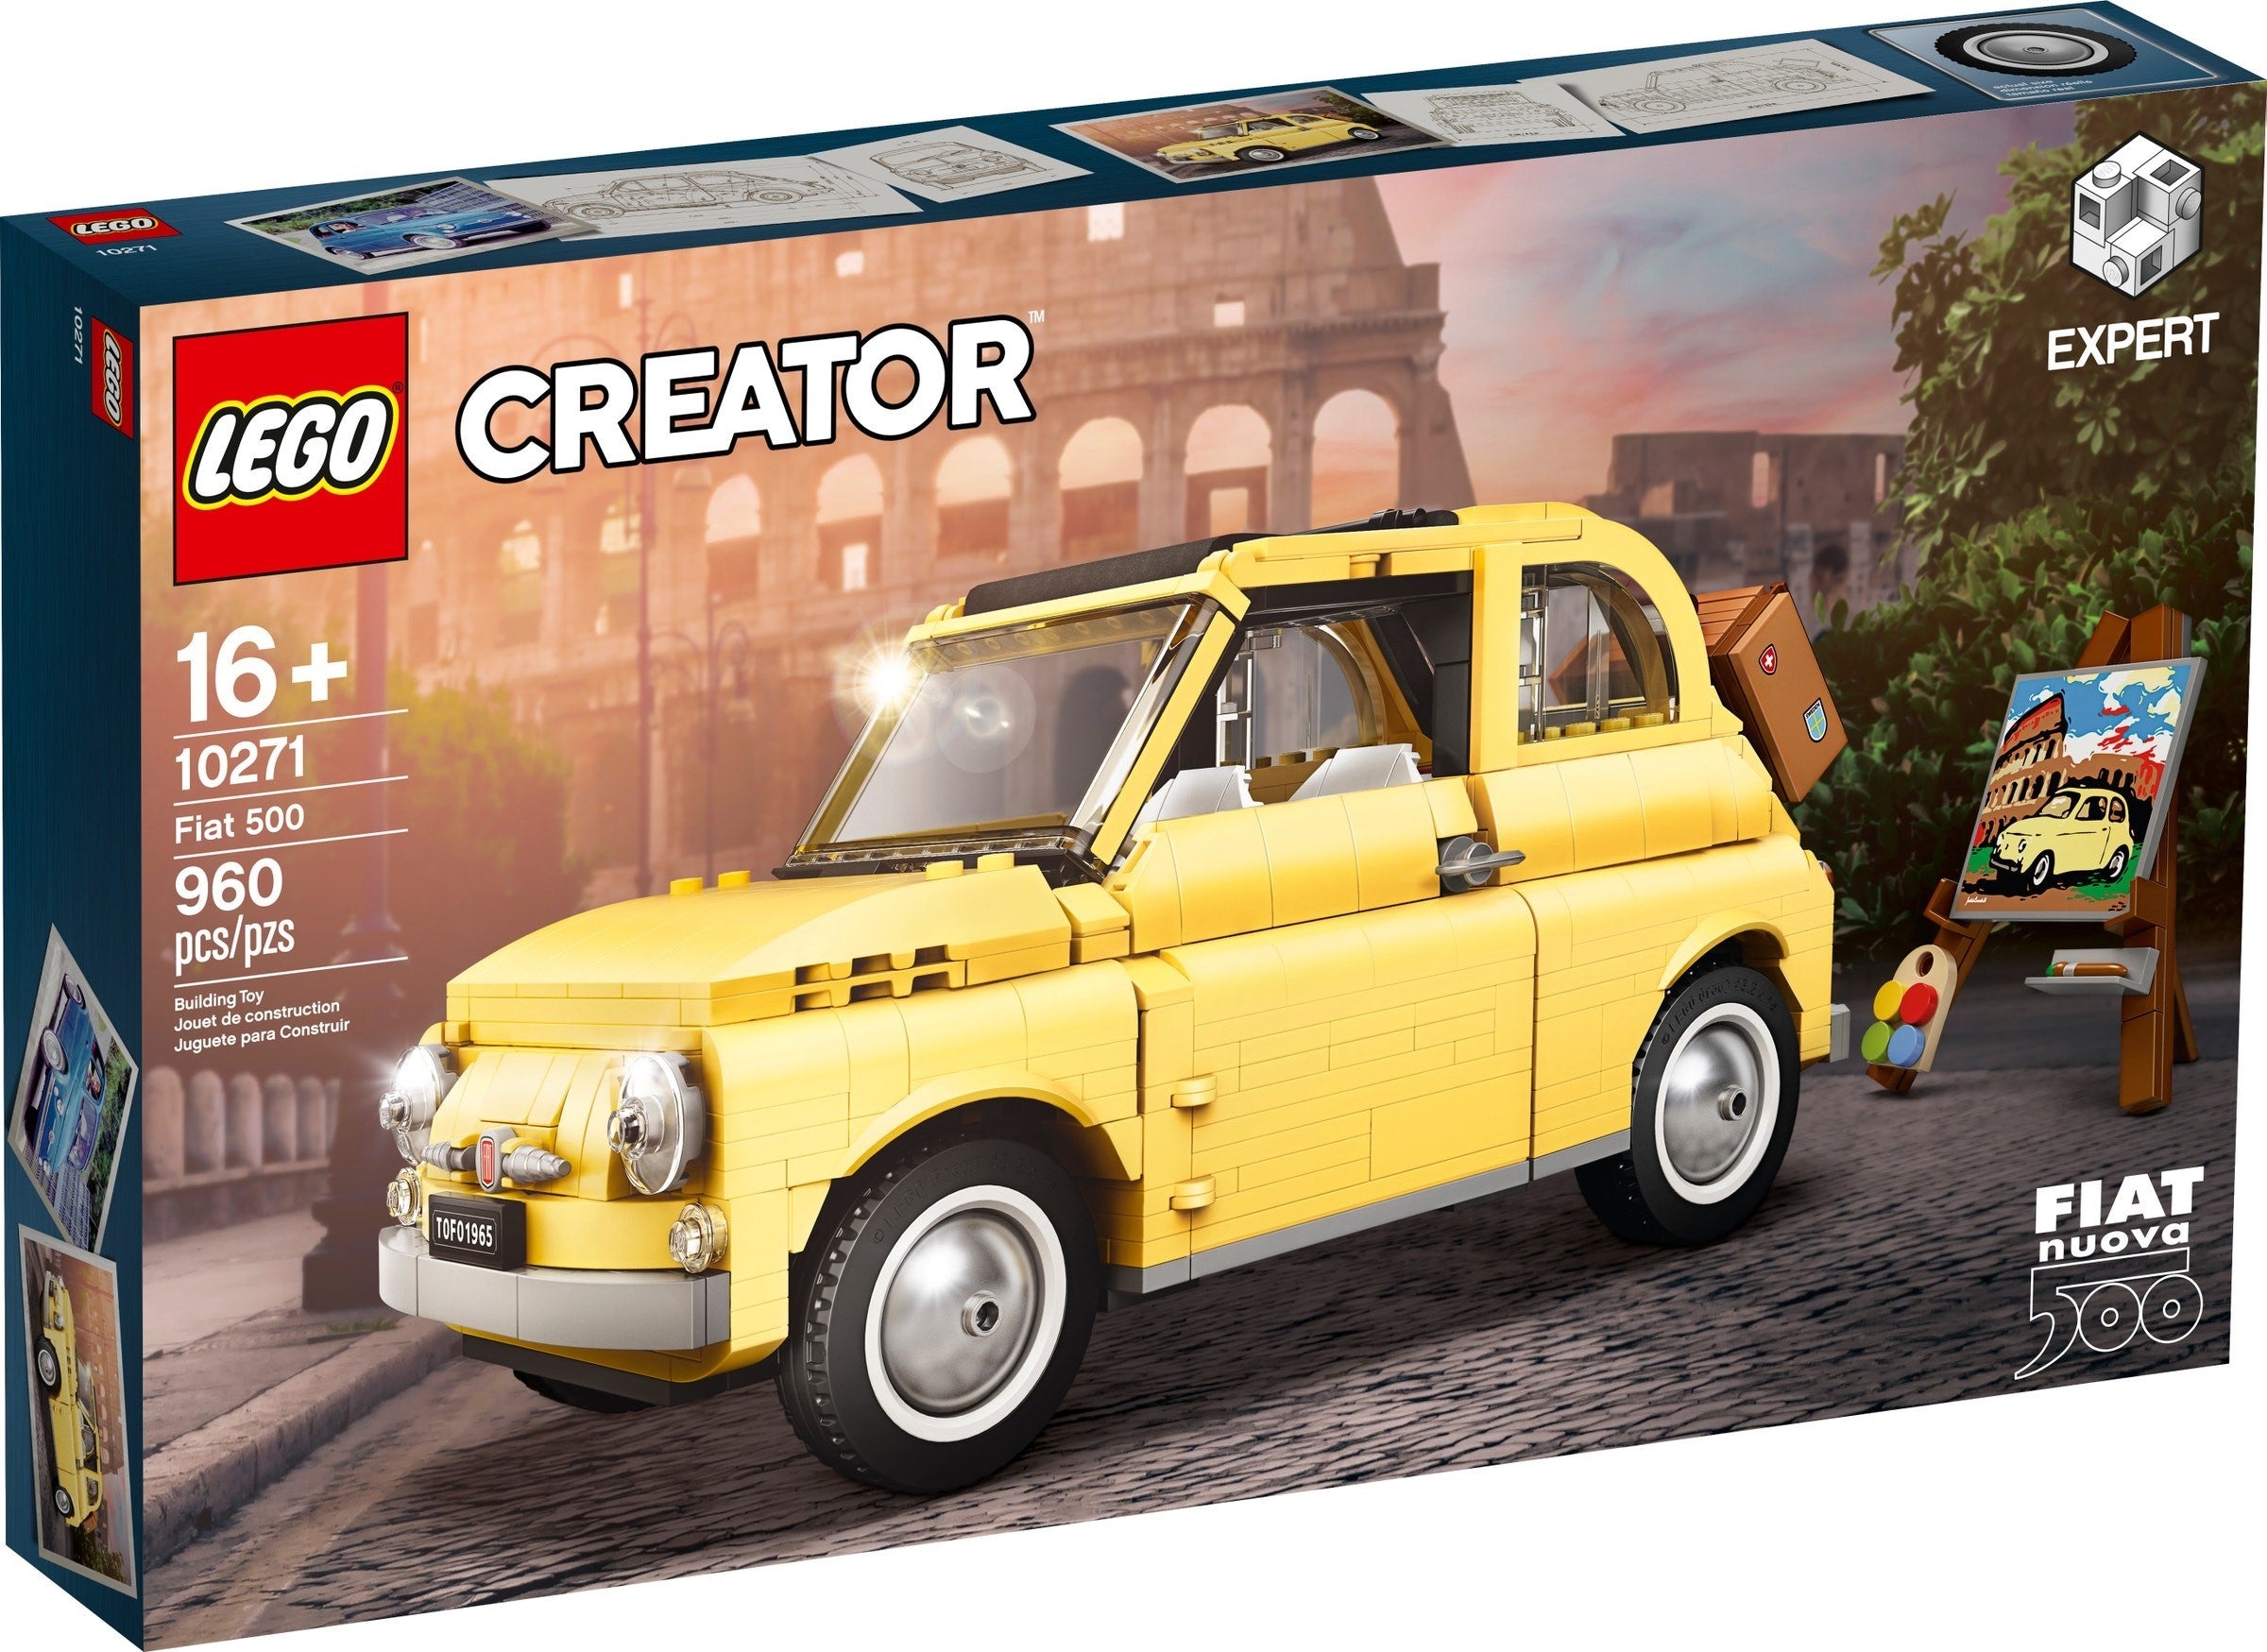 Lego Creator Expert 10271 - Fiat